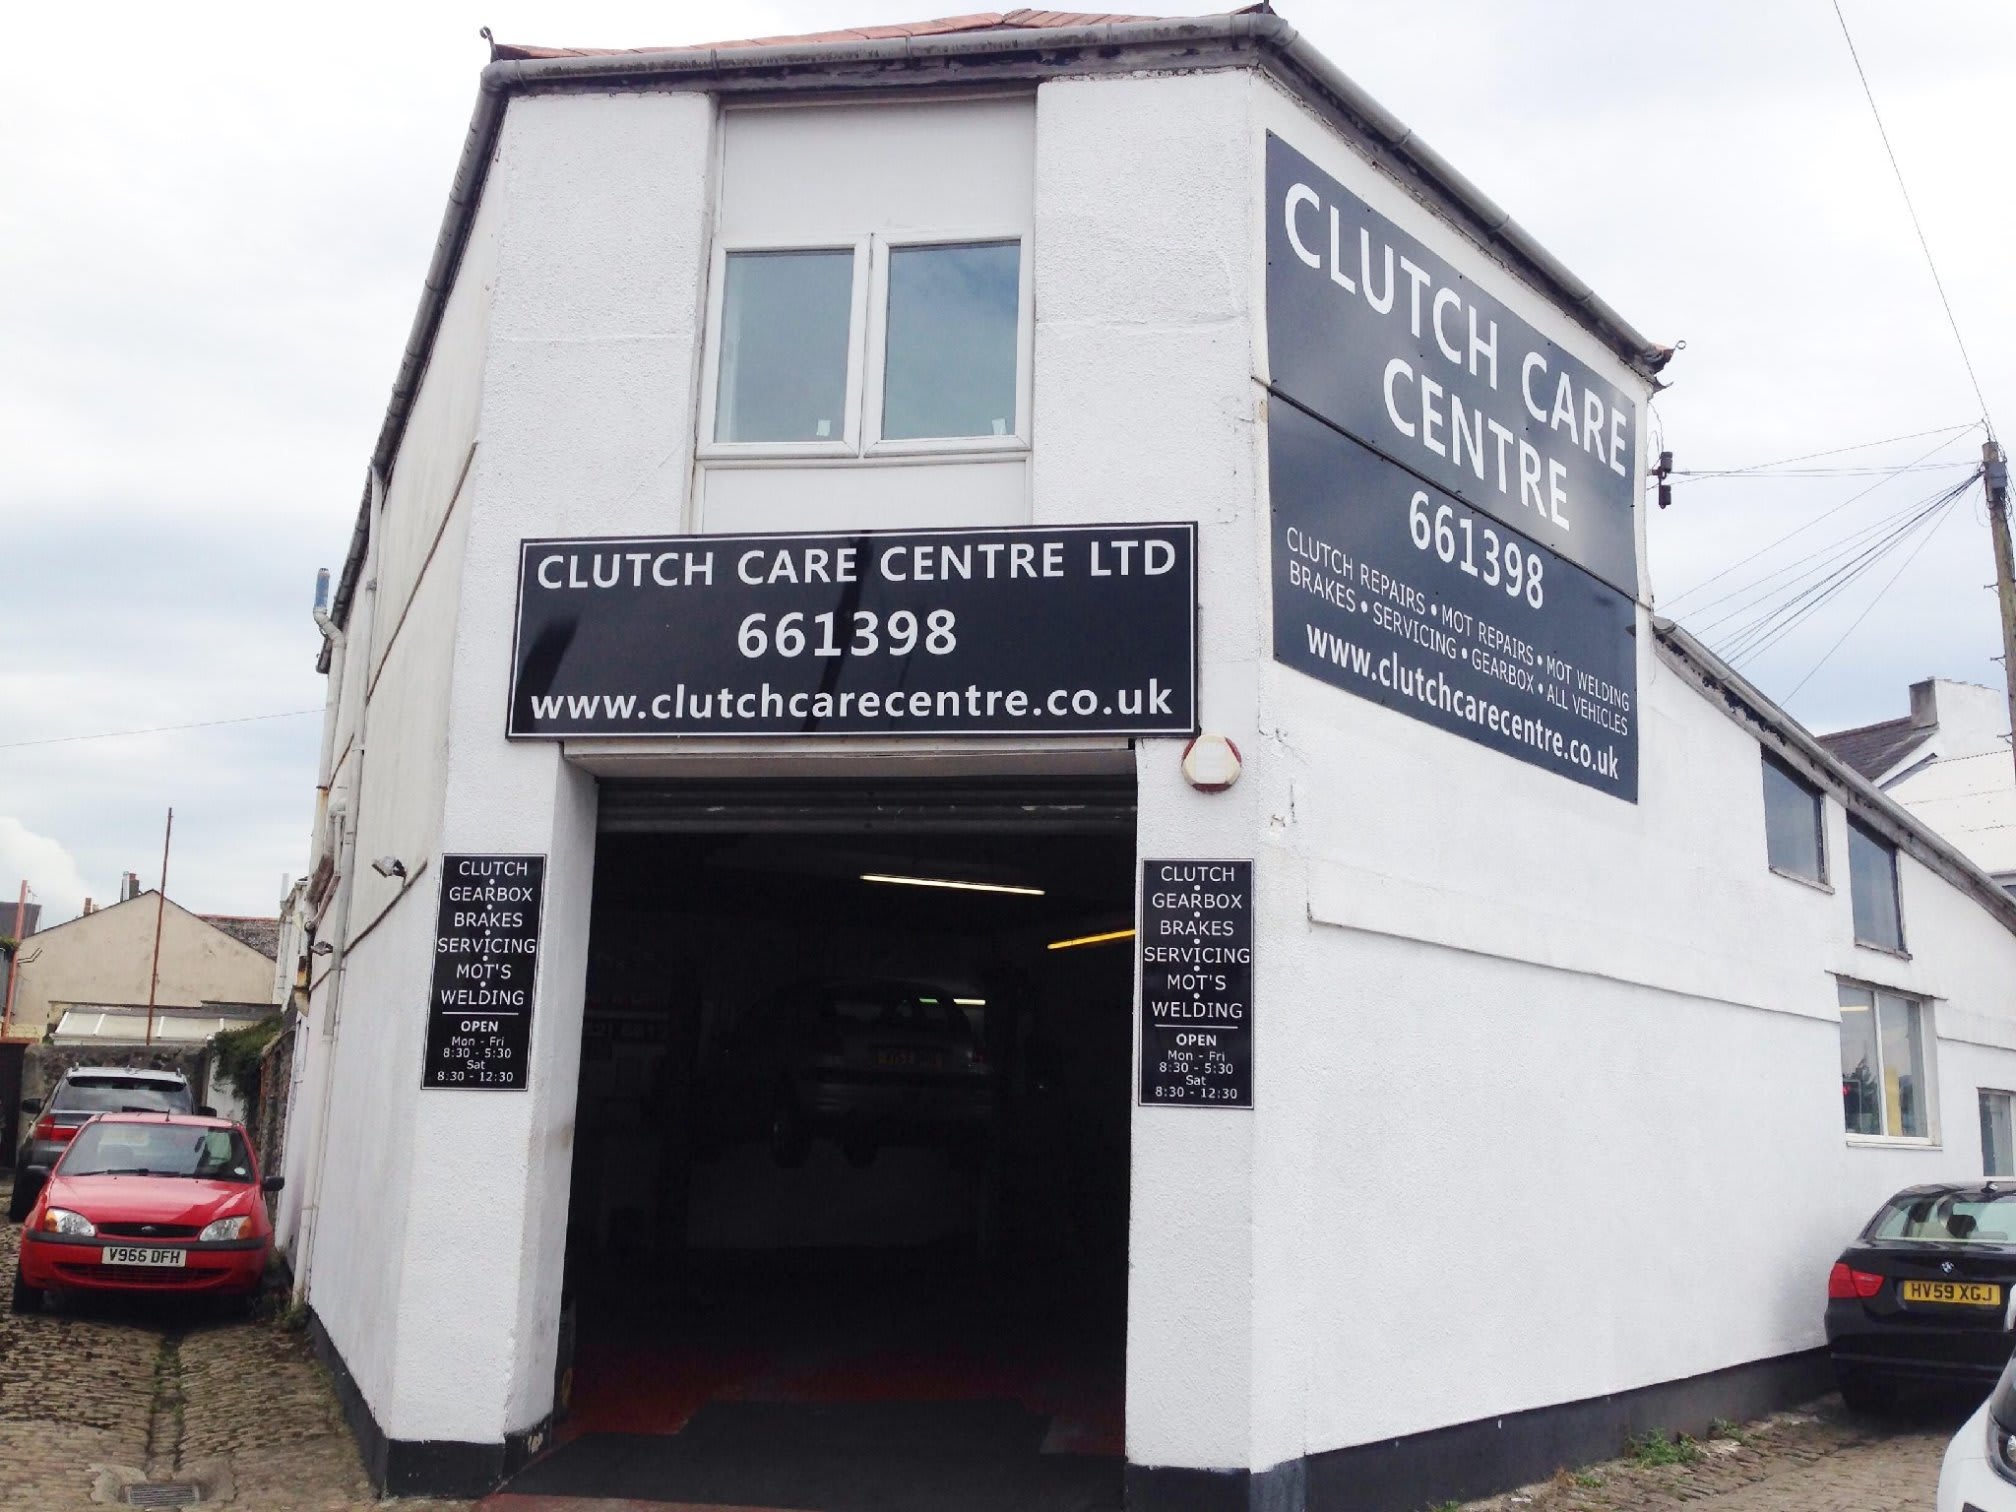 Images Clutch Care Centre Ltd